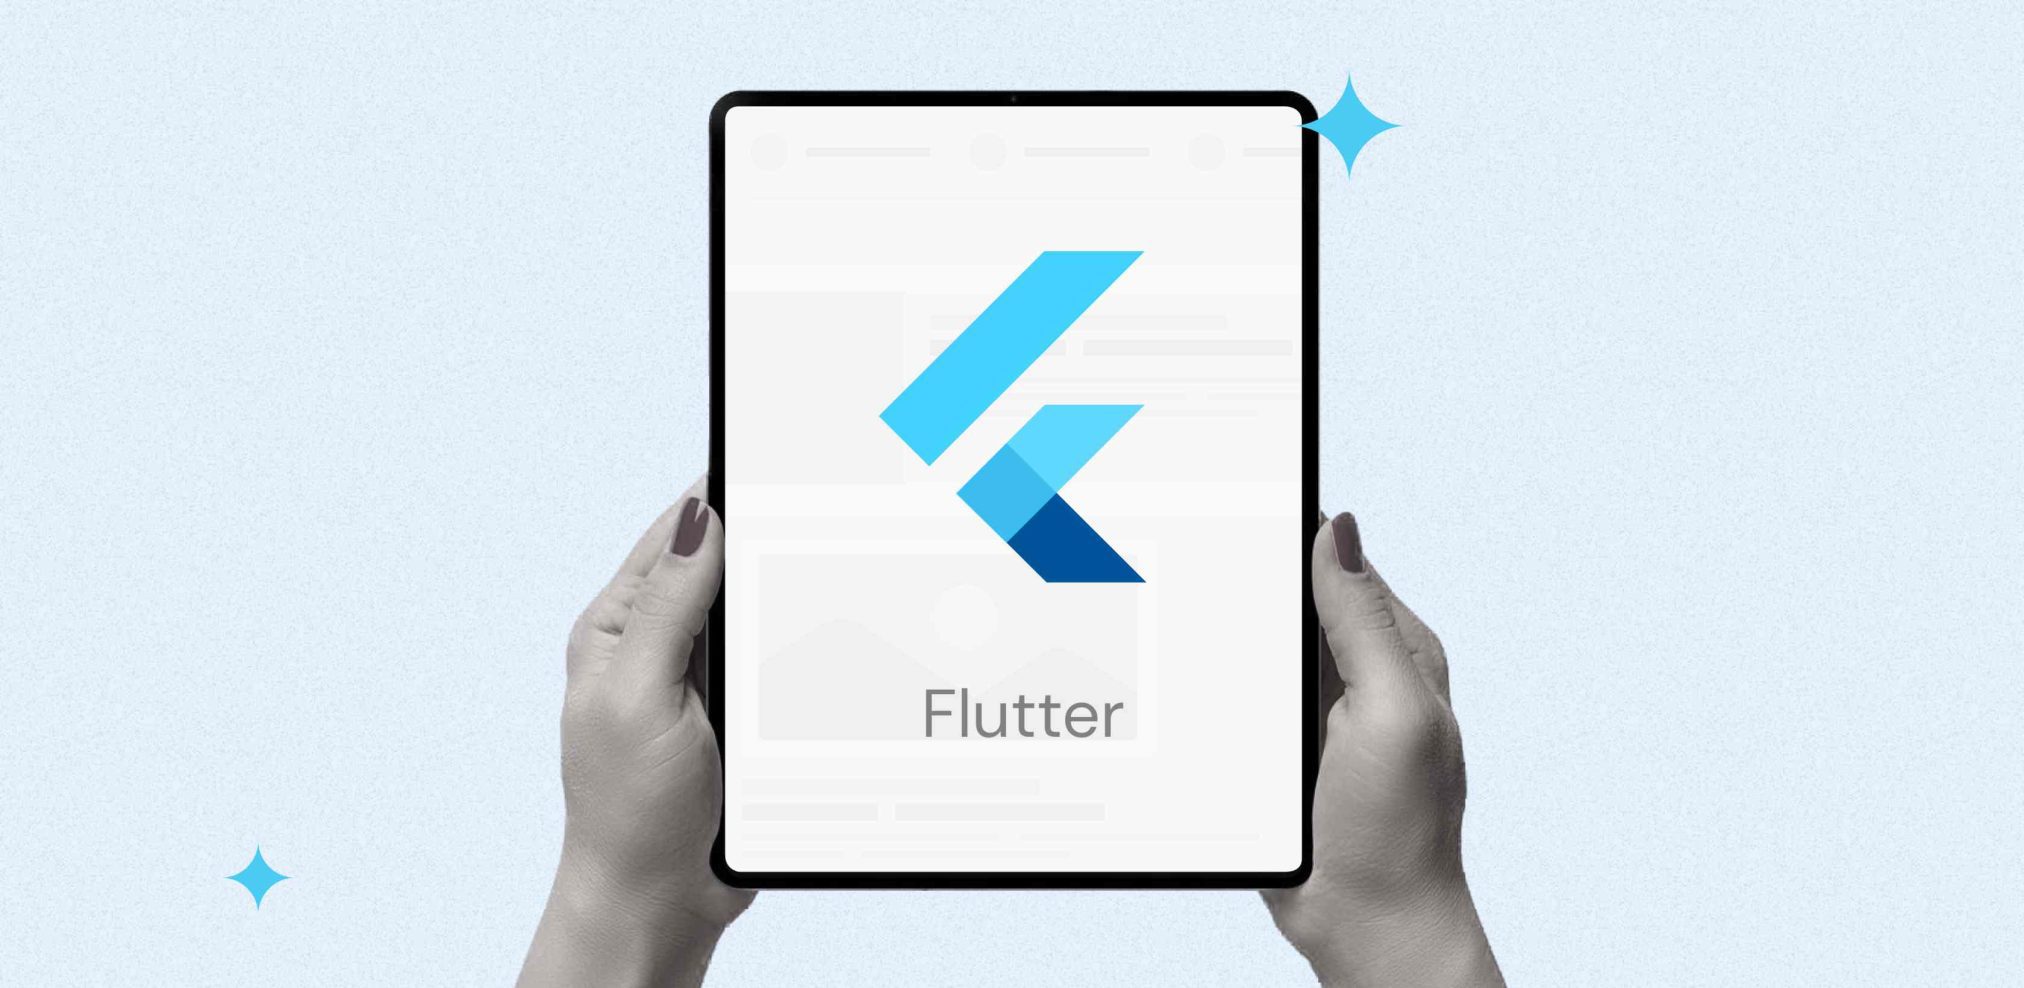 Flutter app development